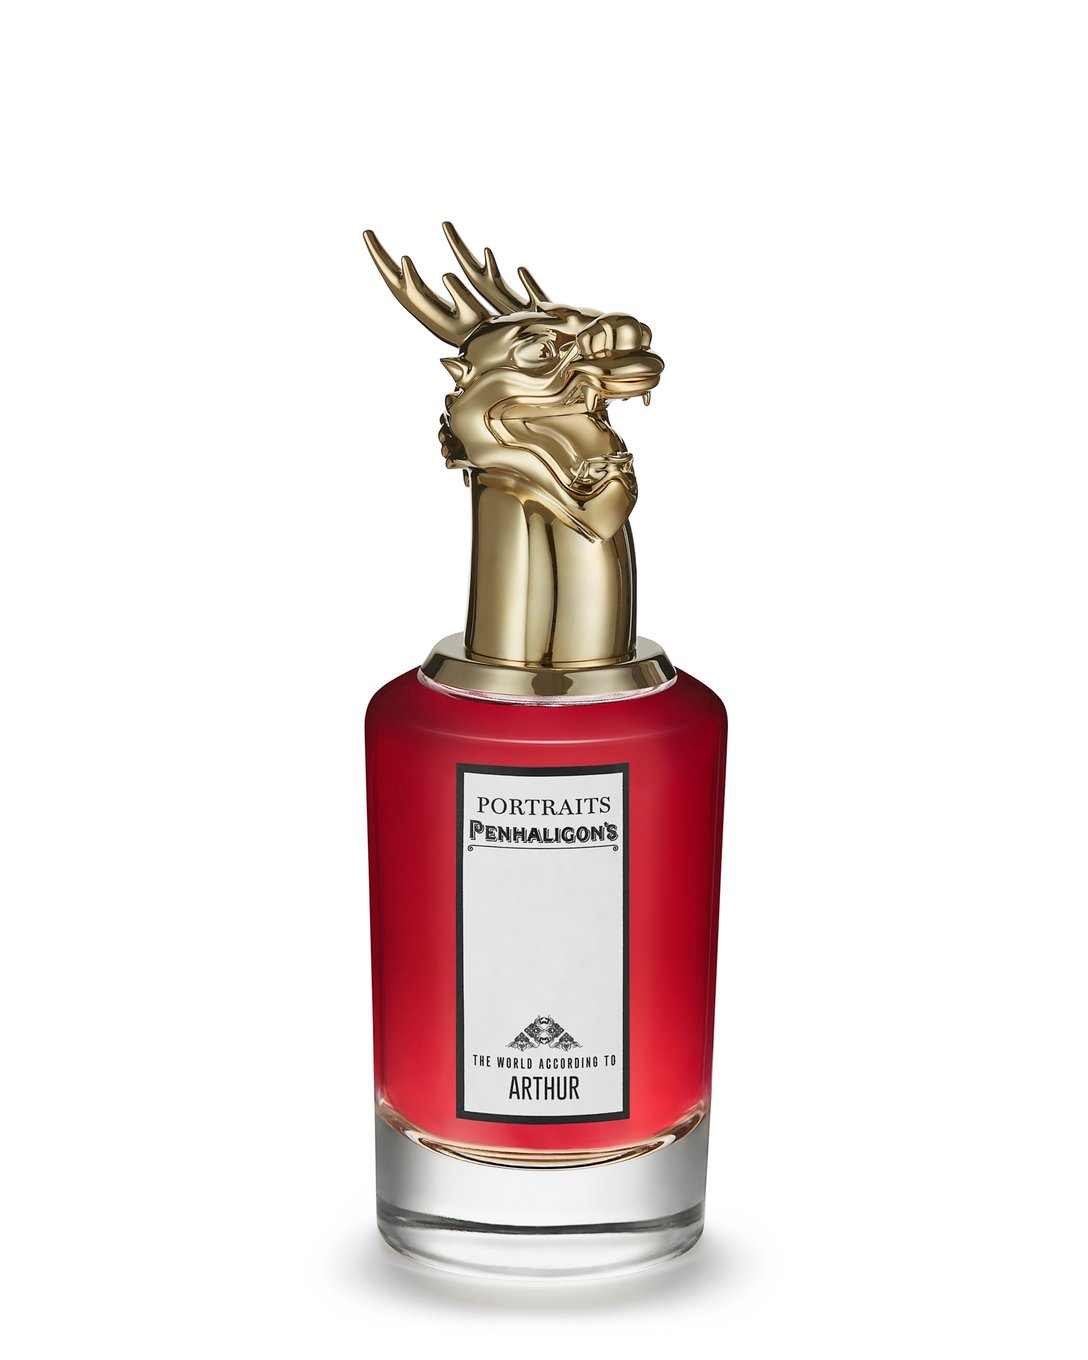 ドラゴンの頭をモチーフをデザインしたペンハリガンの香水のボトル